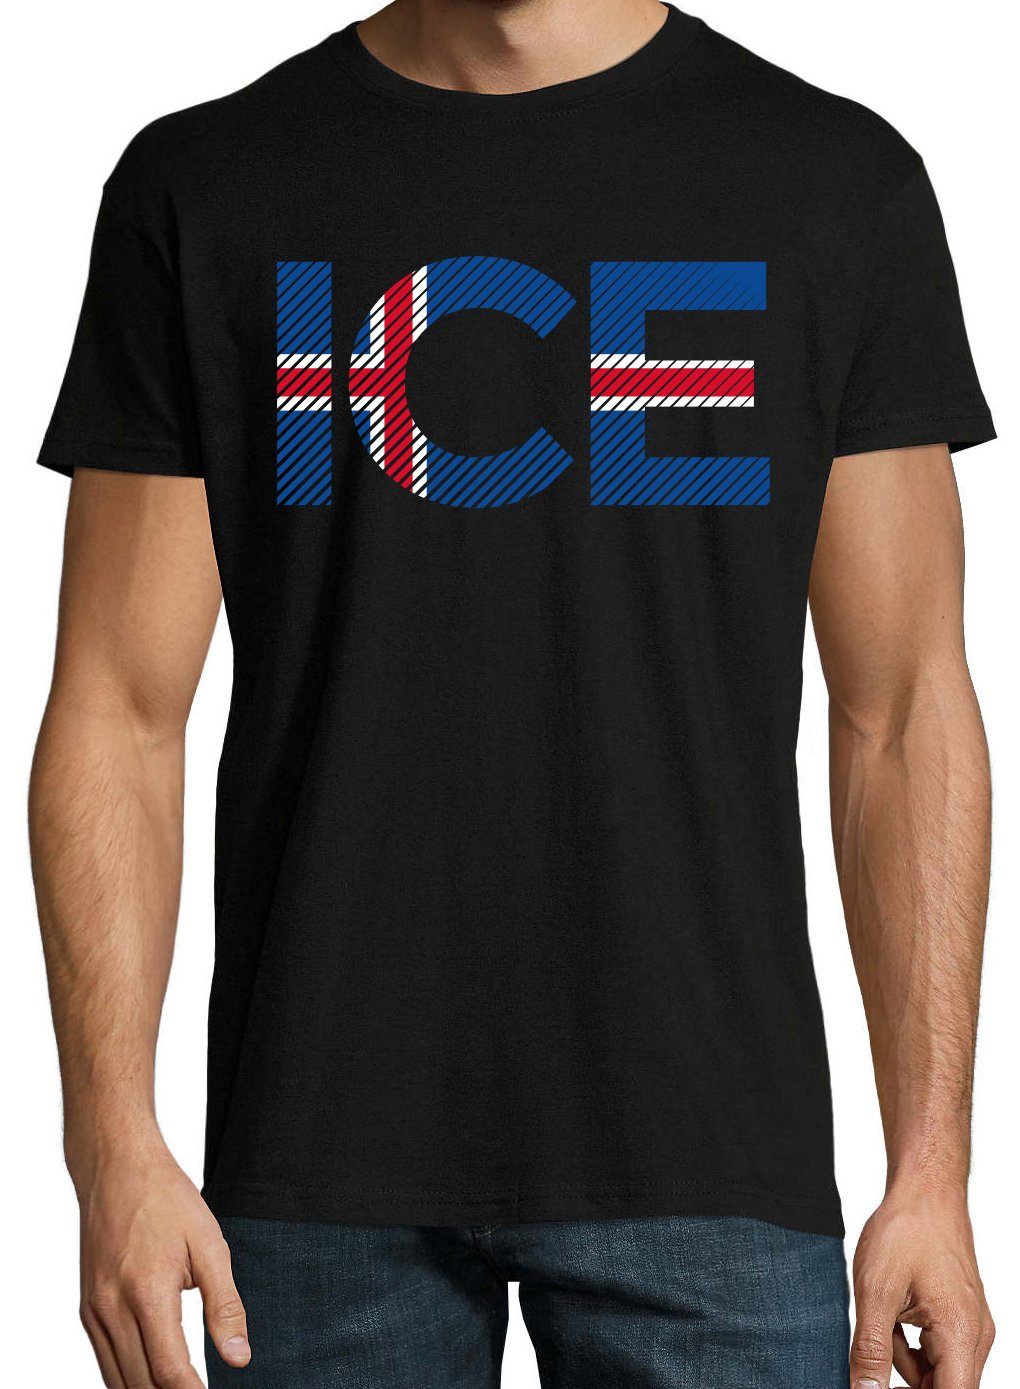 Youth T-Shirt Schwarz Look Herren im Designz Frontprint T-Shirt Fußball ICE Iceland mit